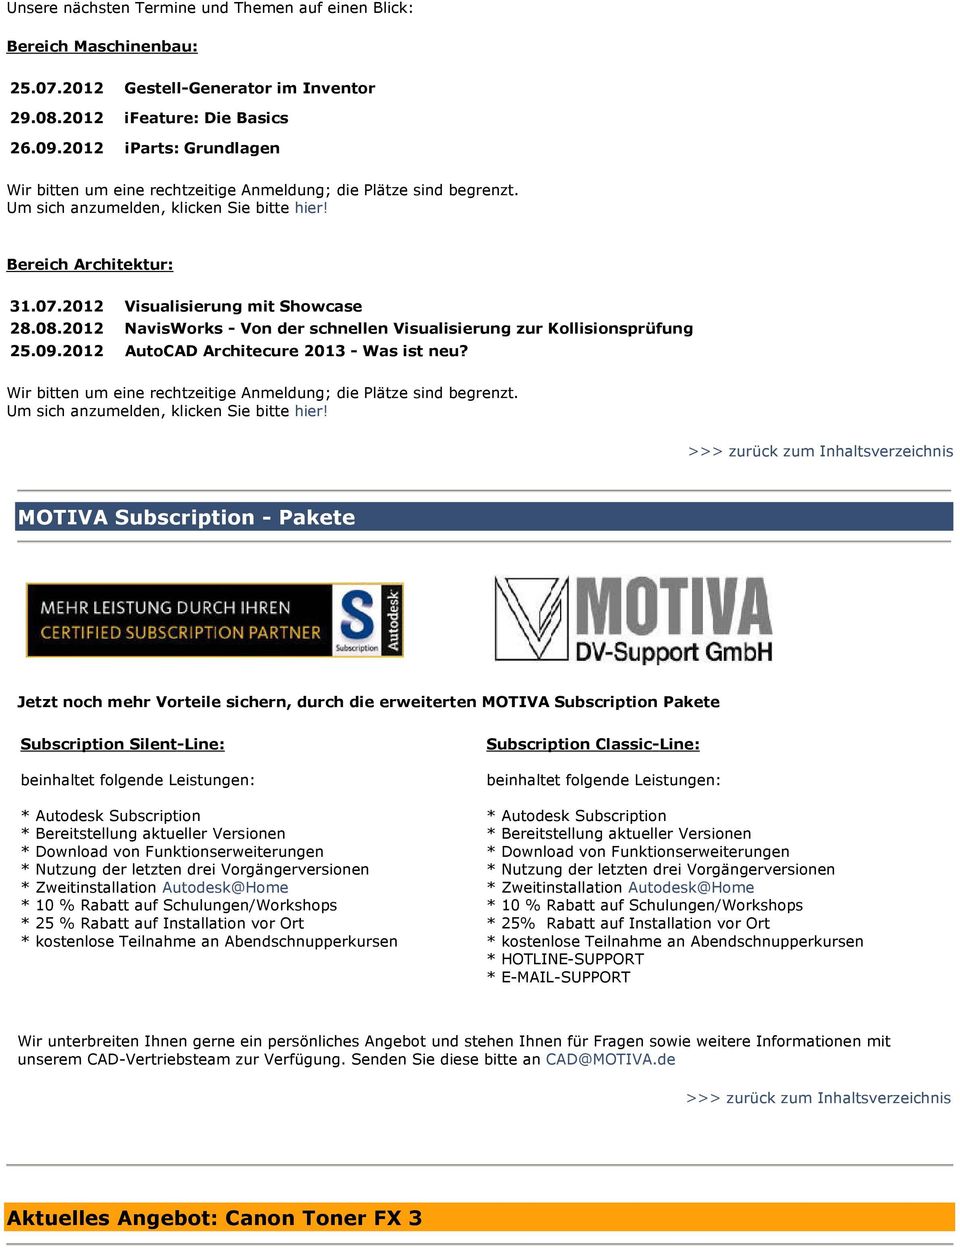 08.2012 NavisWorks - Von der schnellen Visualisierung zur Kollisionsprüfung 25.09.2012 AutoCAD Architecure 2013 - Was ist neu? Wir bitten um eine rechtzeitige Anmeldung; die Plätze sind begrenzt.